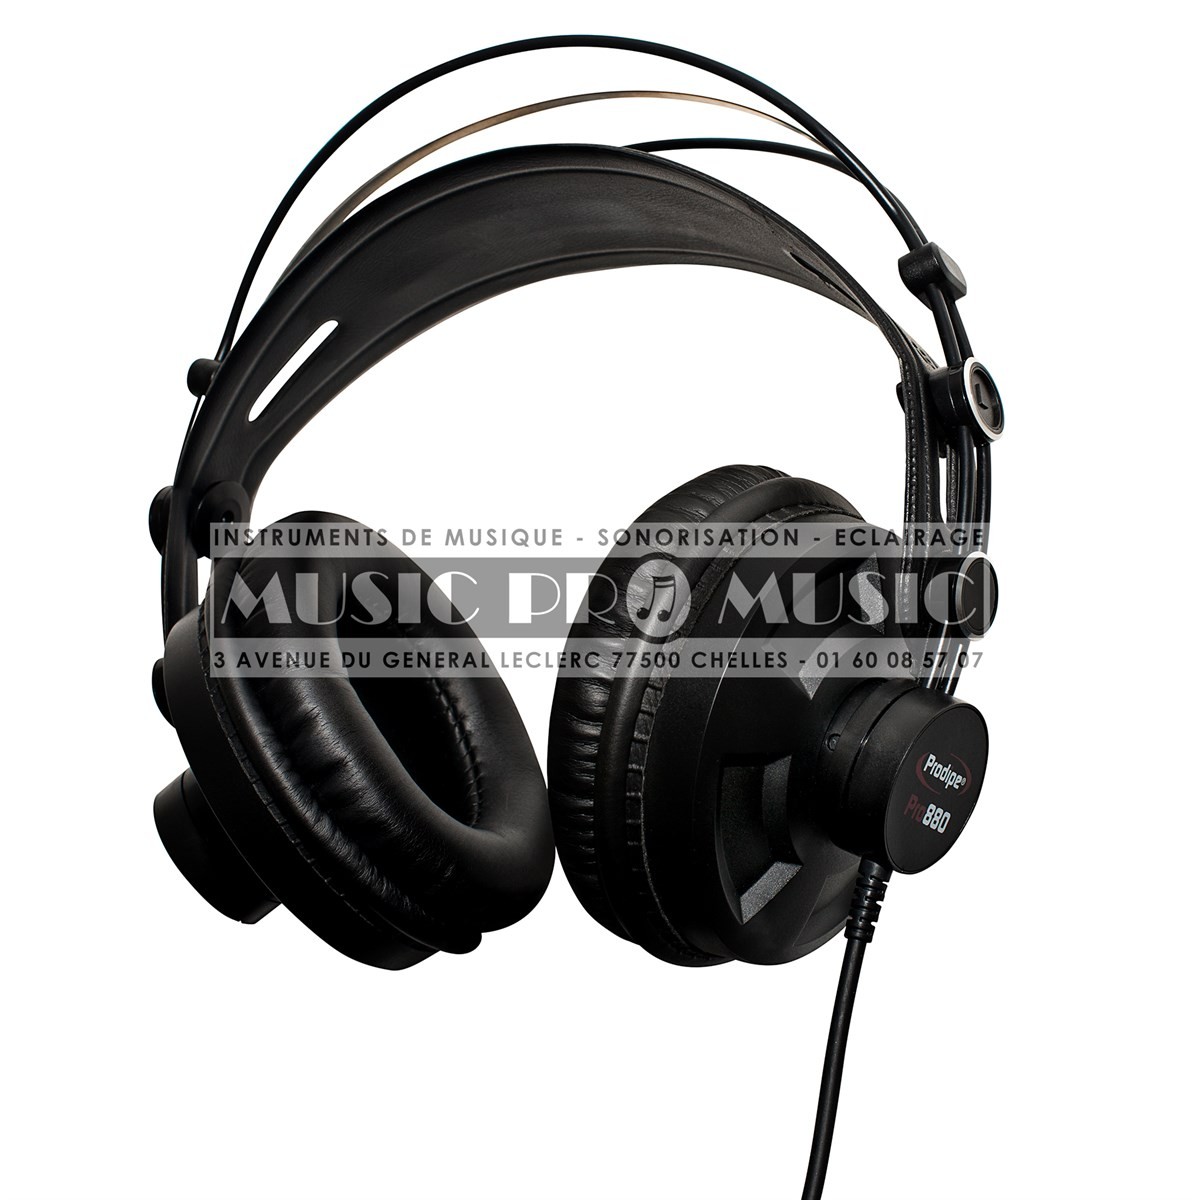 Matériel audio professionnel Prodipe : Micros, interfaces audio, casques,  enceintes de monitoring